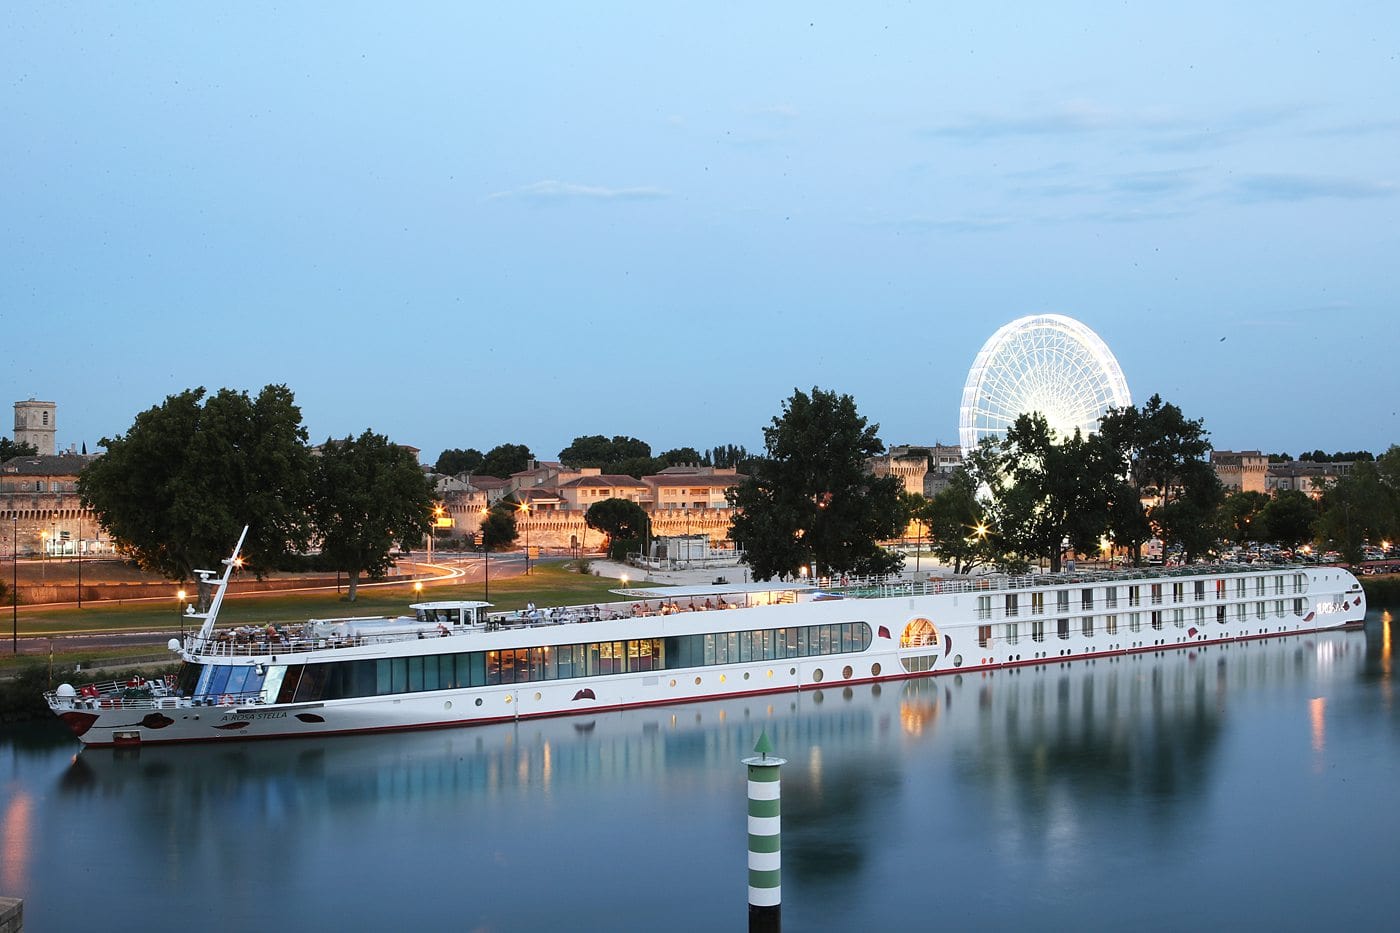 A-Rosa river cruise ship in Avignon France.